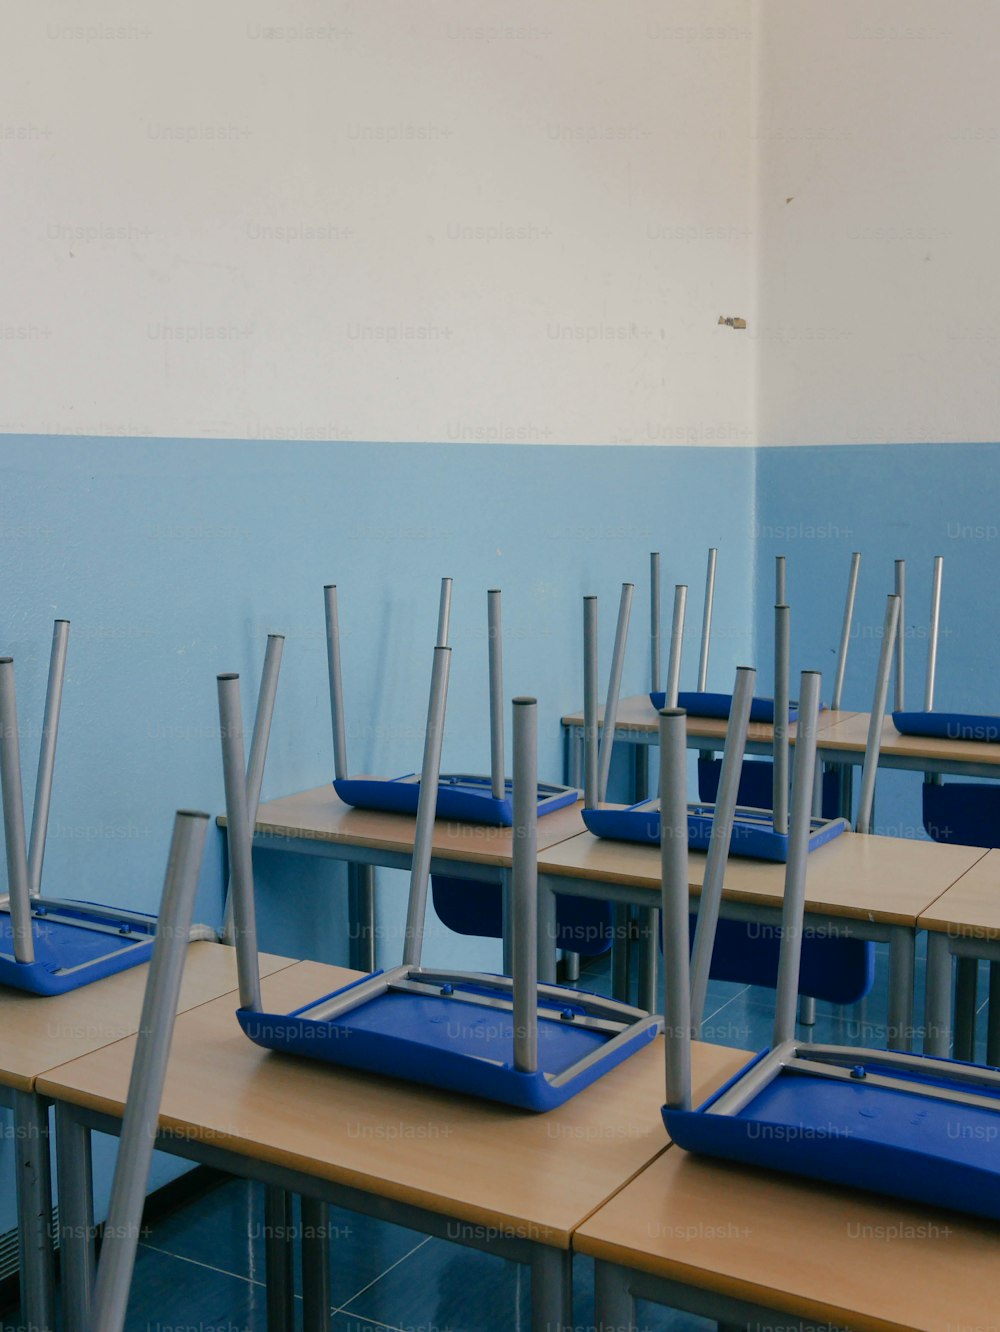 una fila de escritorios con bandejas azules encima de ellos